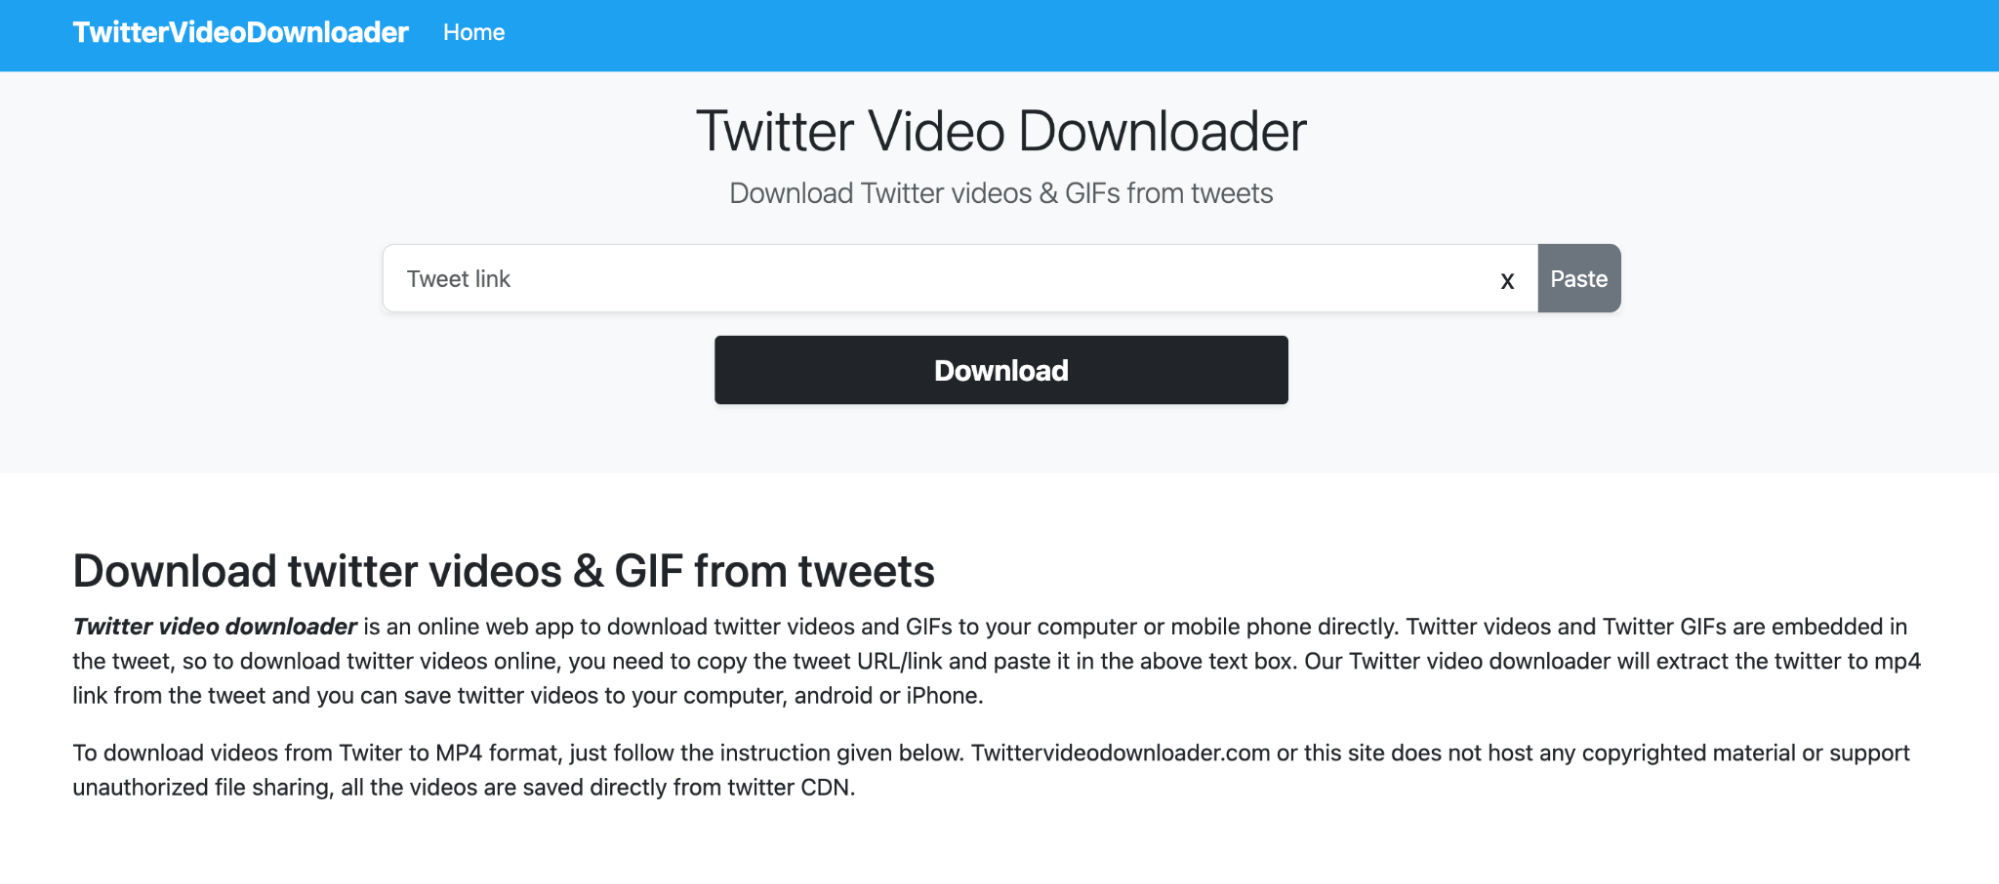 Twitter Video Downloader homescreen